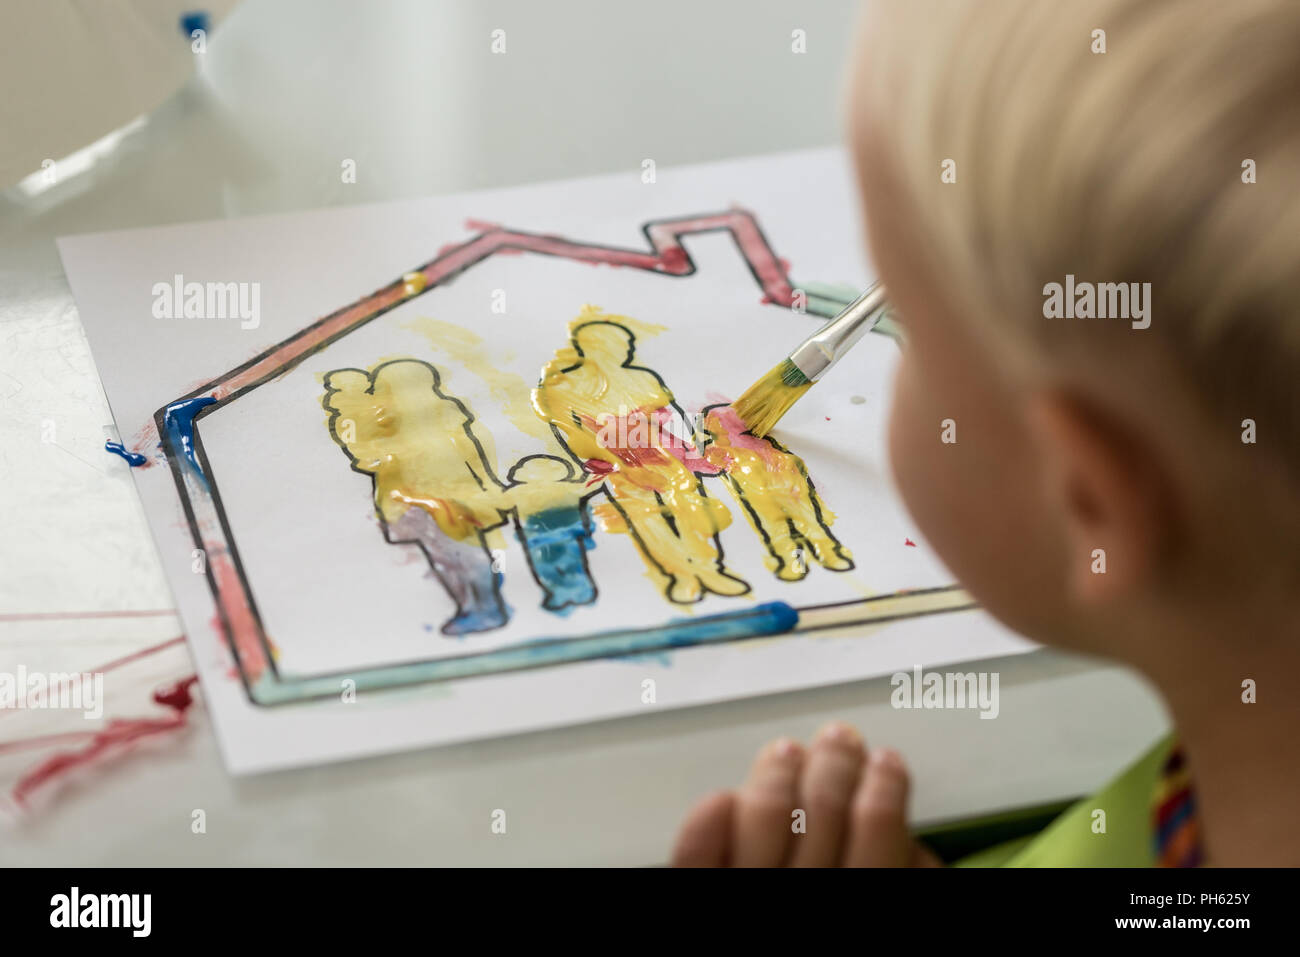 Junge Spaß malen ein Bild in eine Familie in einem Haus mit bunten Wasser Color Farben in einem über die Schulter sehen. Stockfoto